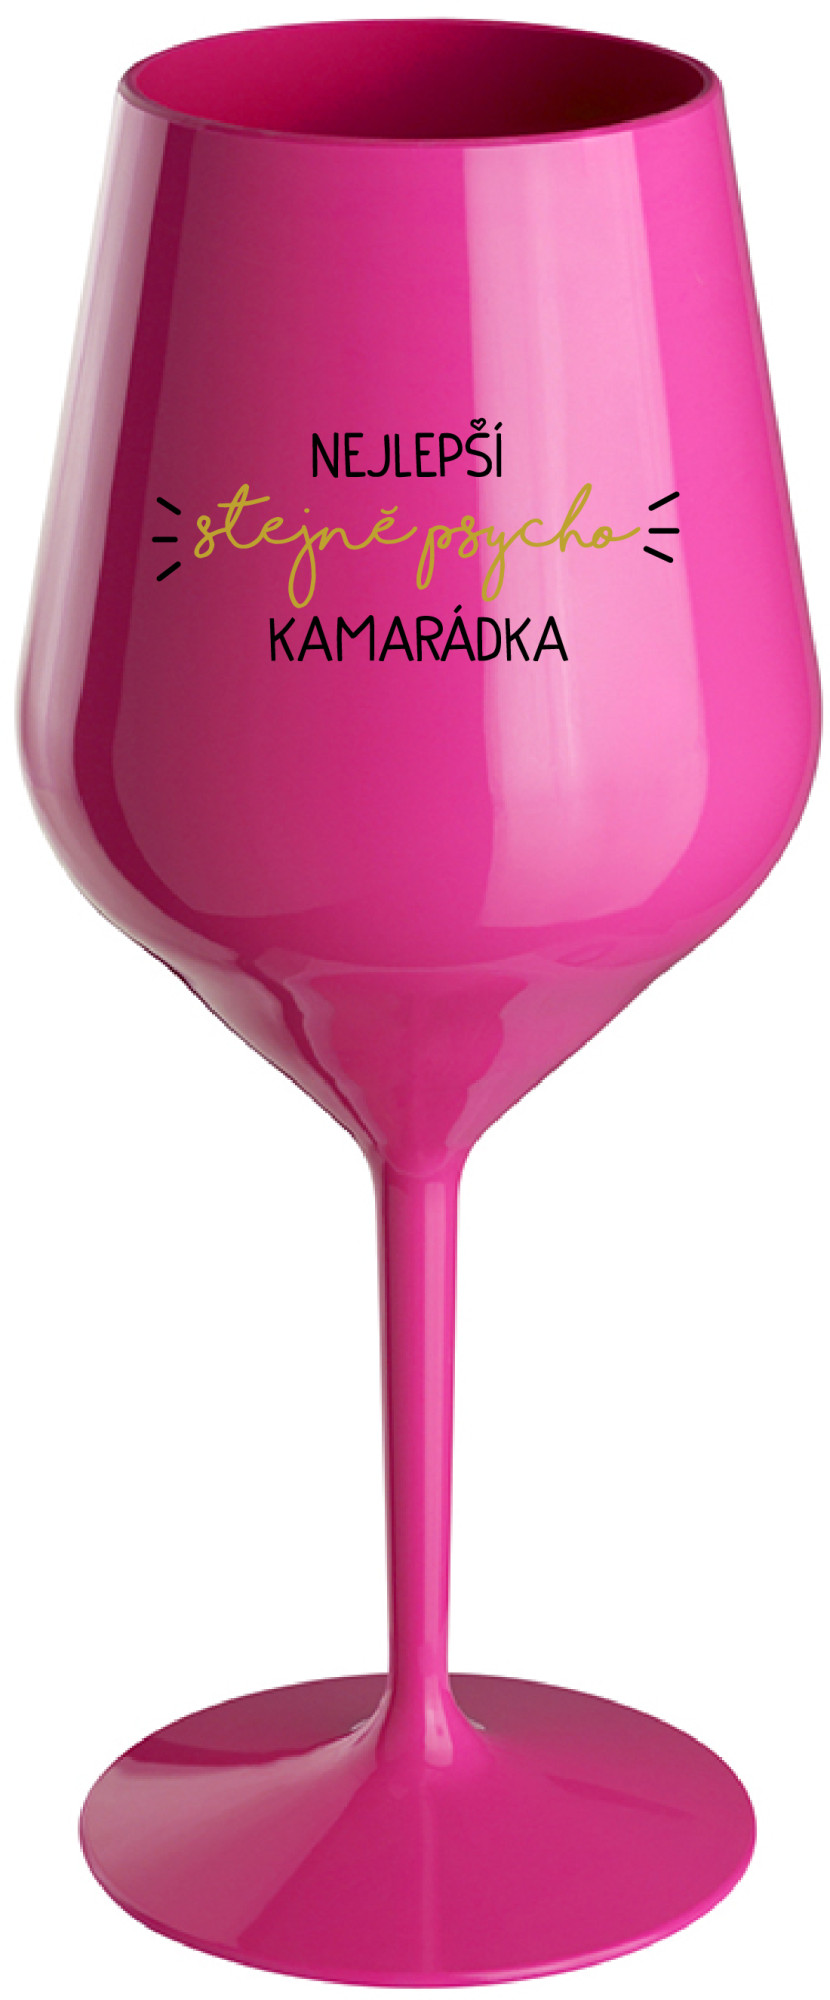 NEJLEPŠÍ STEJNĚ PSYCHO KAMARÁDKA - růžová nerozbitná sklenice na víno 470 ml